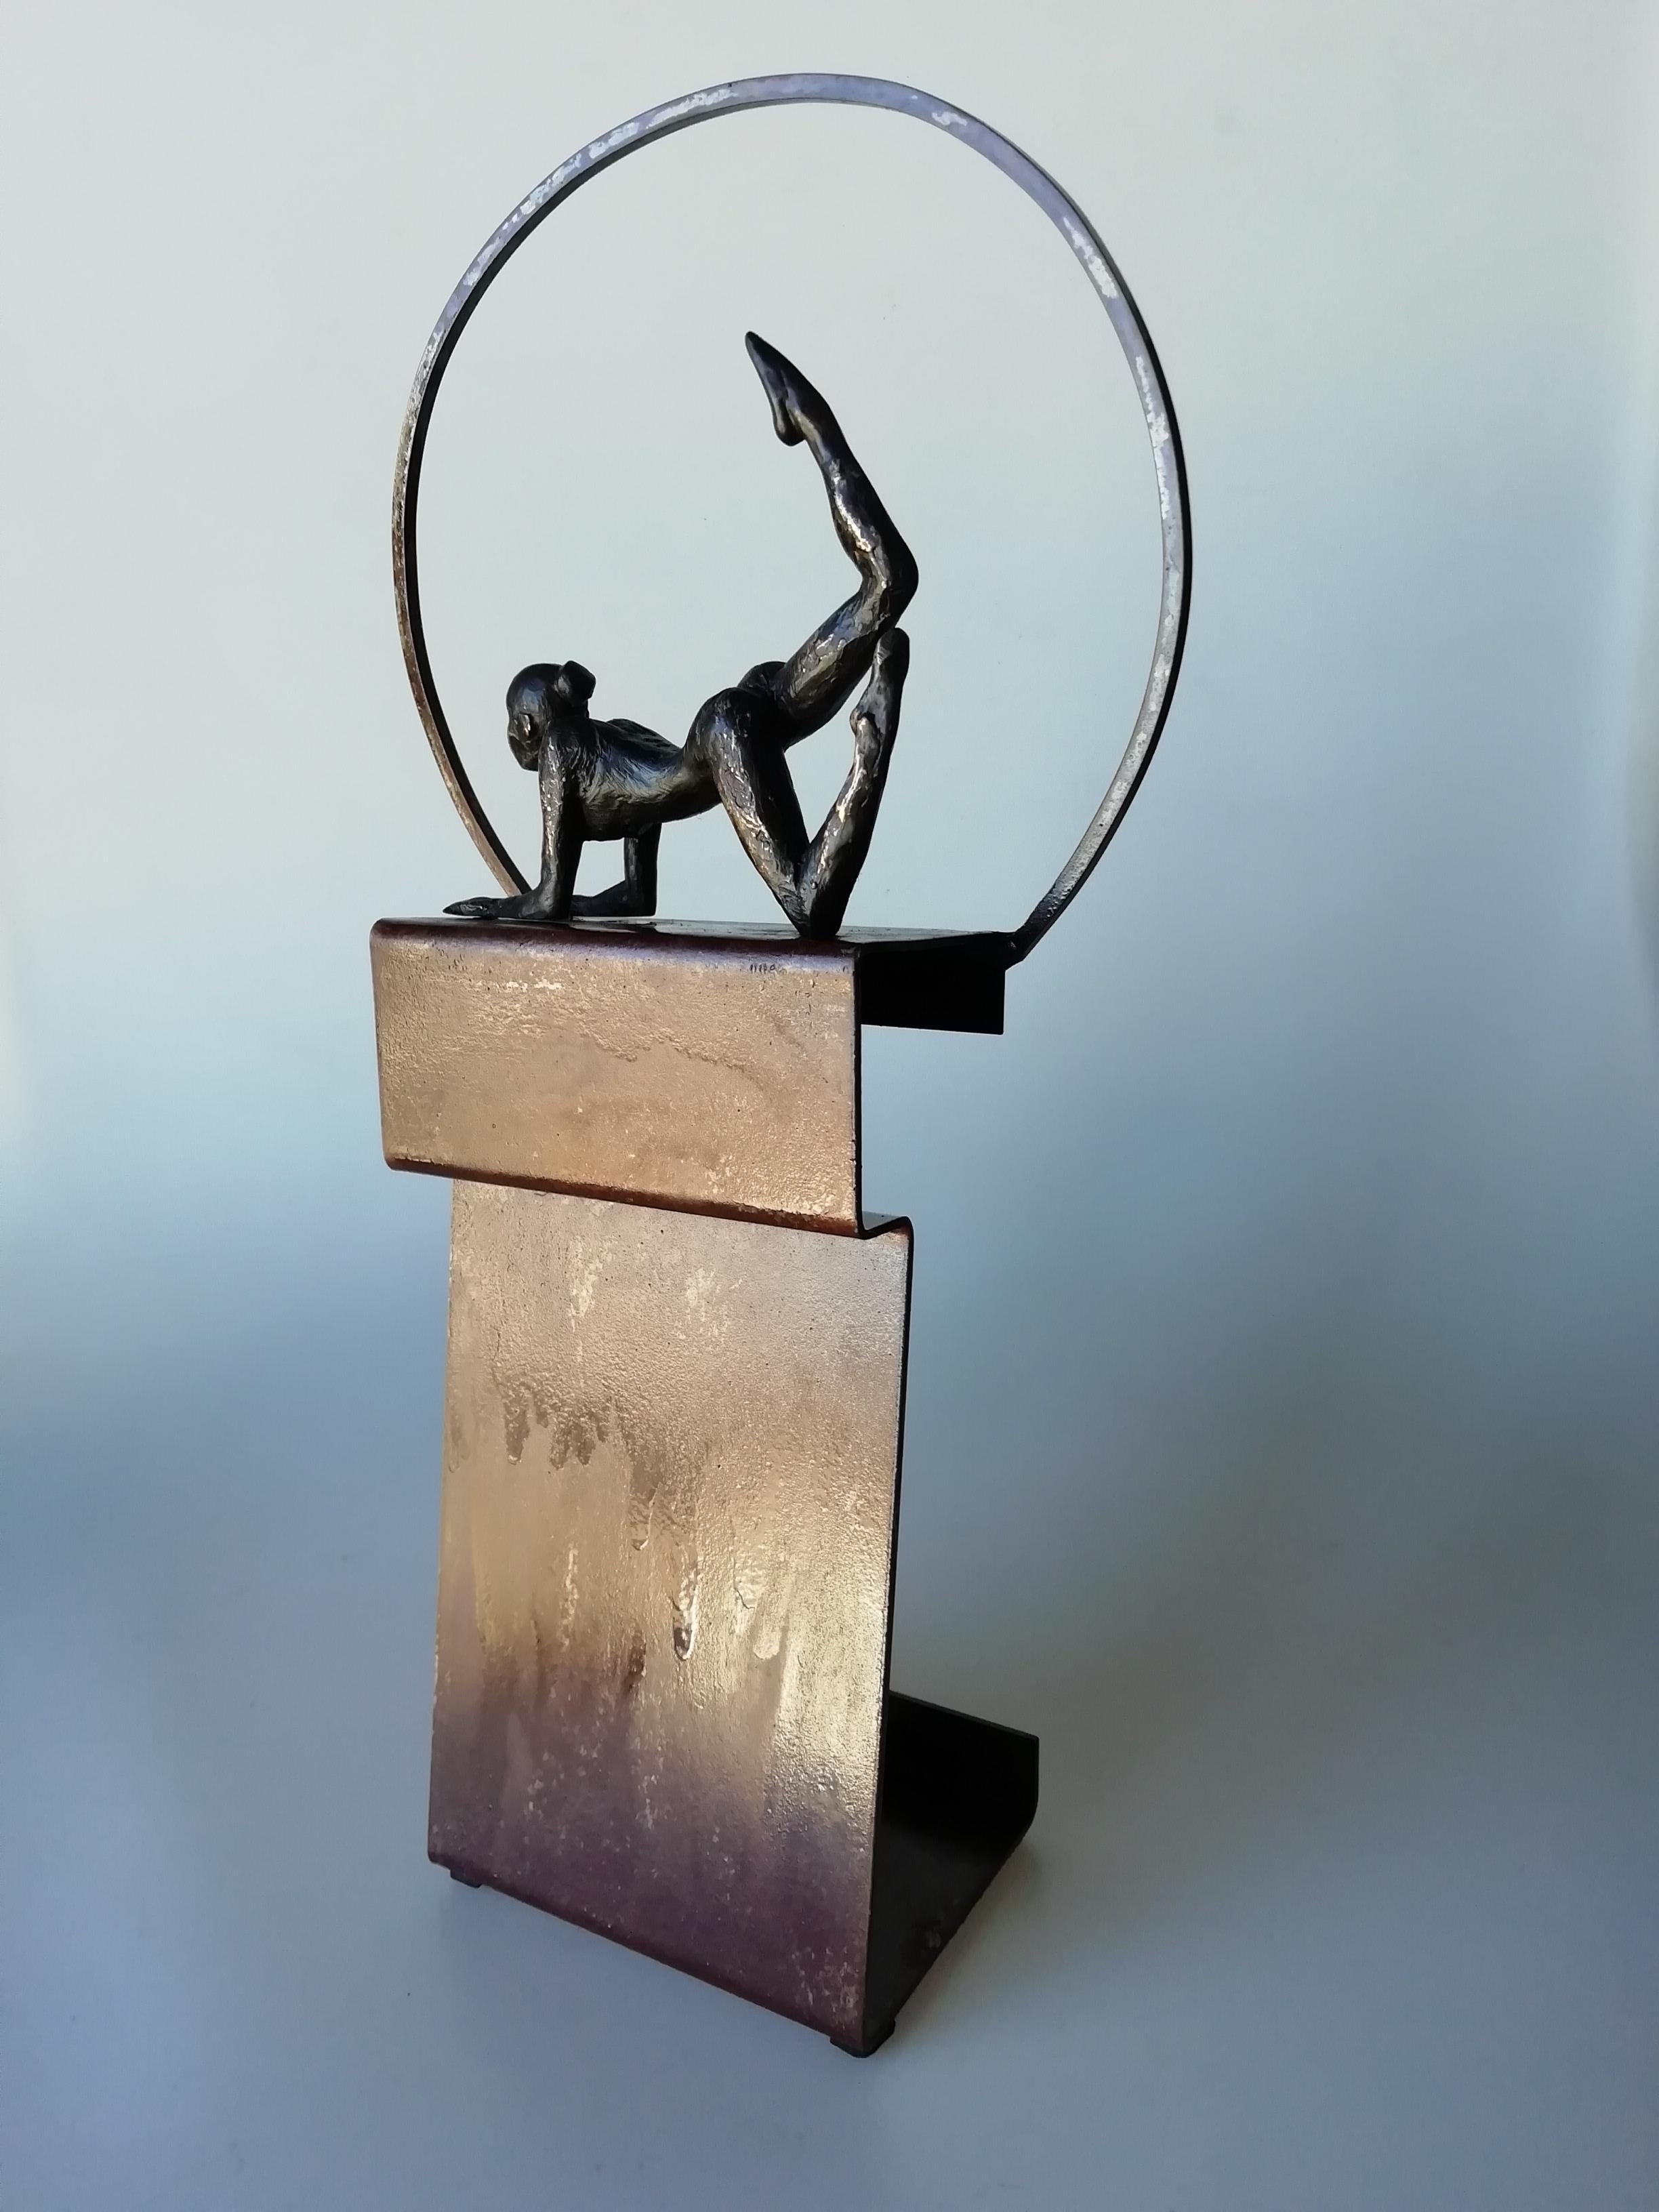 Figurative Sculpture Joan Artigas Planas - Table en bronze contemporaine «legria », sculpture murale figurative fille en train de se détendre, yoga